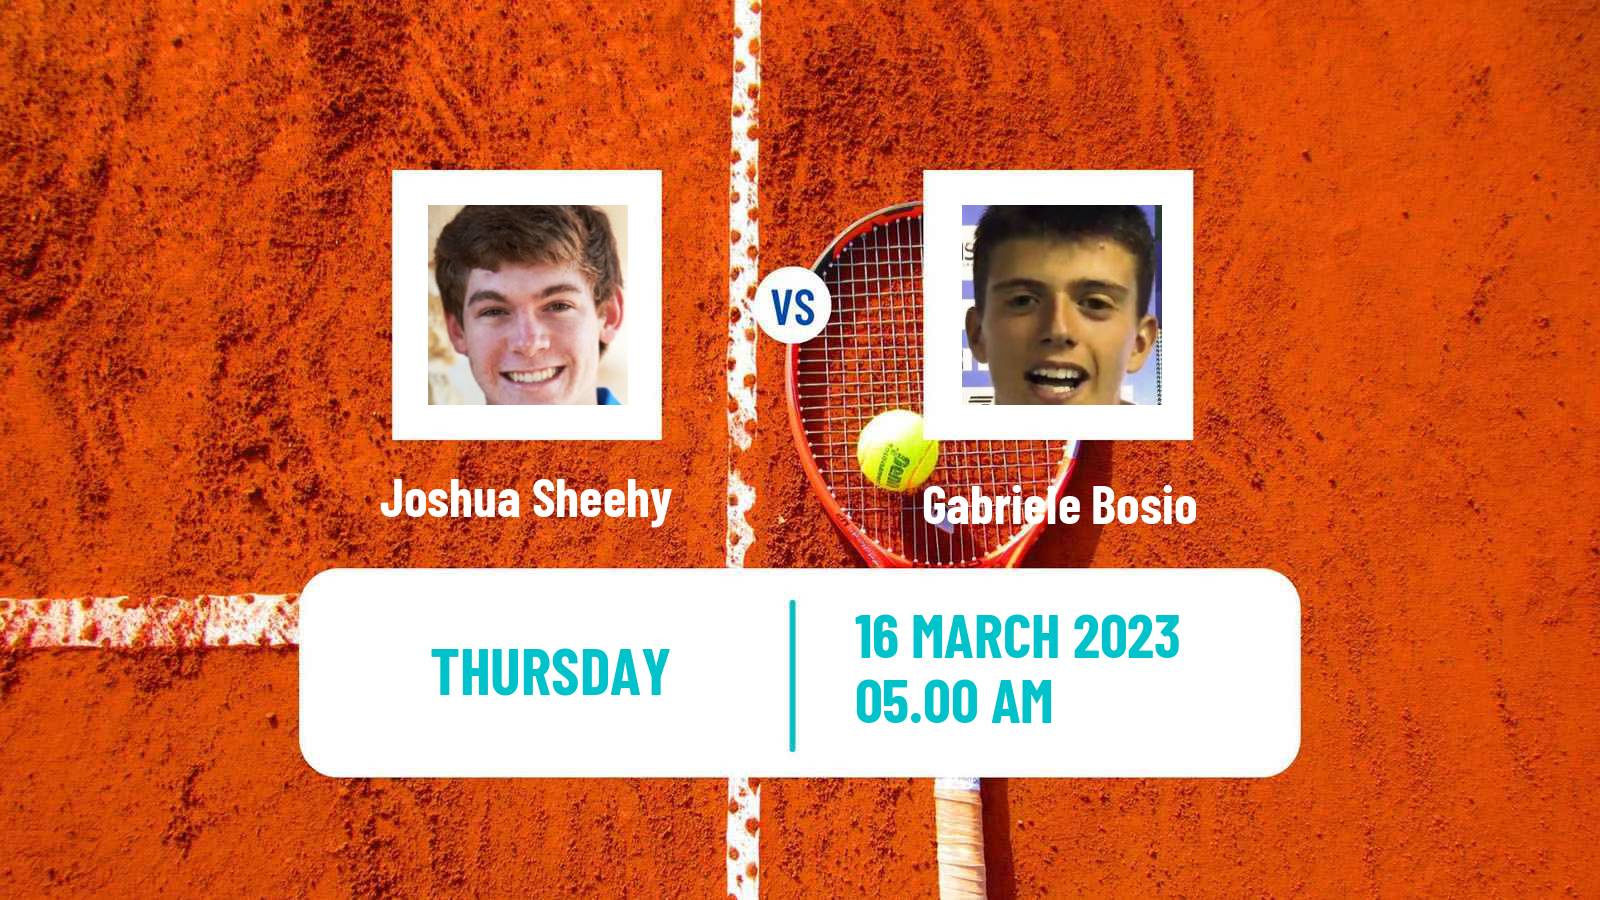 Tennis ITF Tournaments Joshua Sheehy - Gabriele Bosio